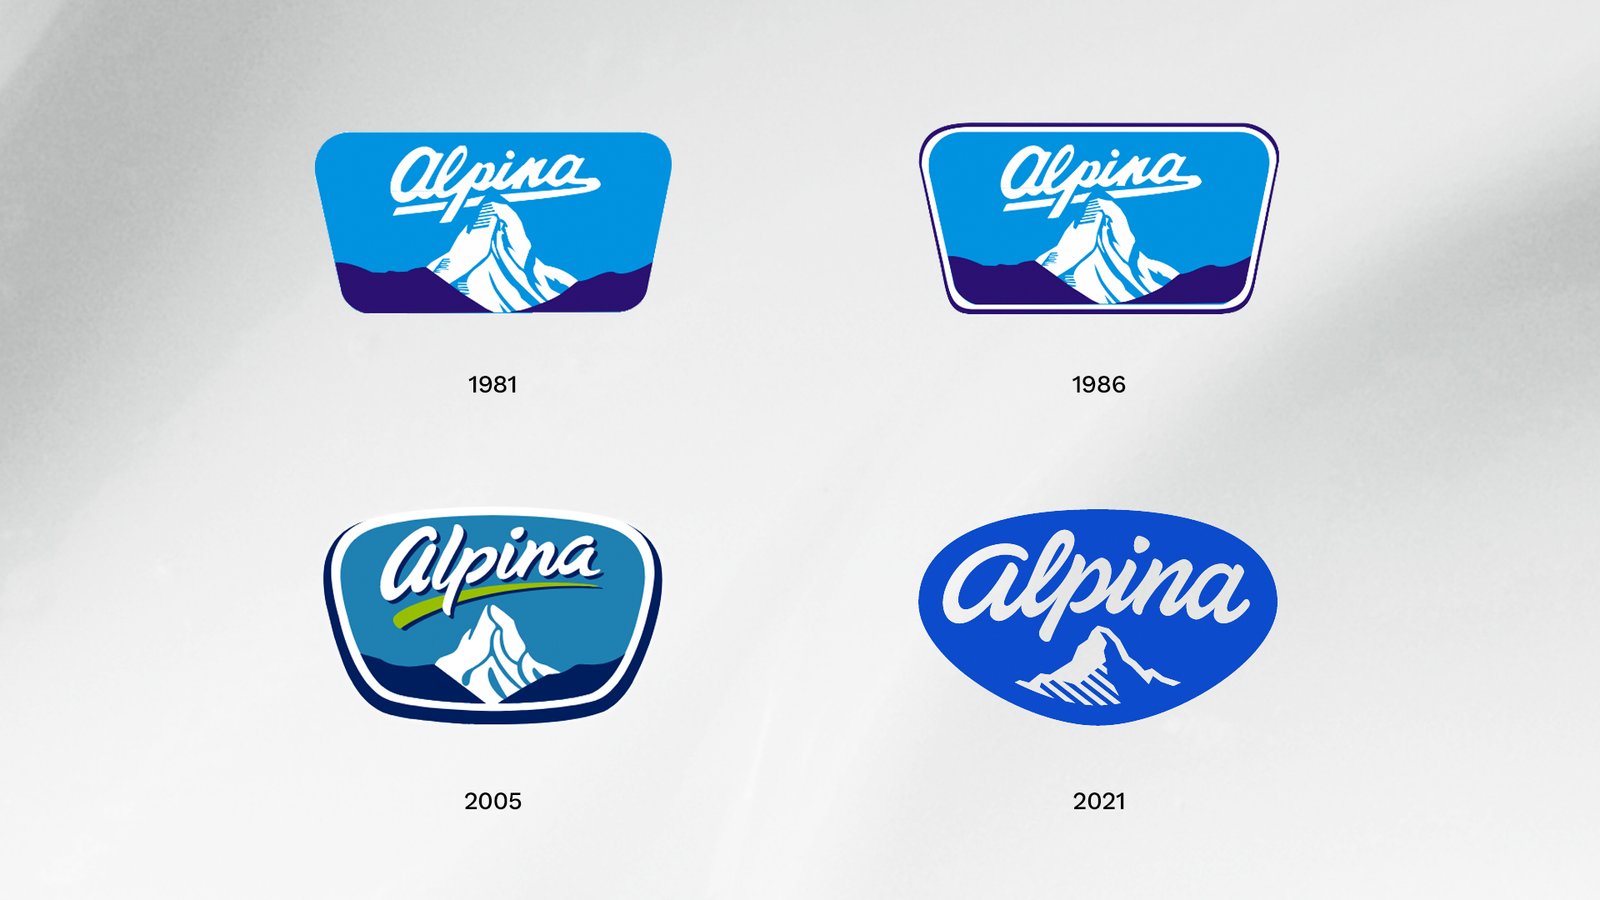 Logo alpina